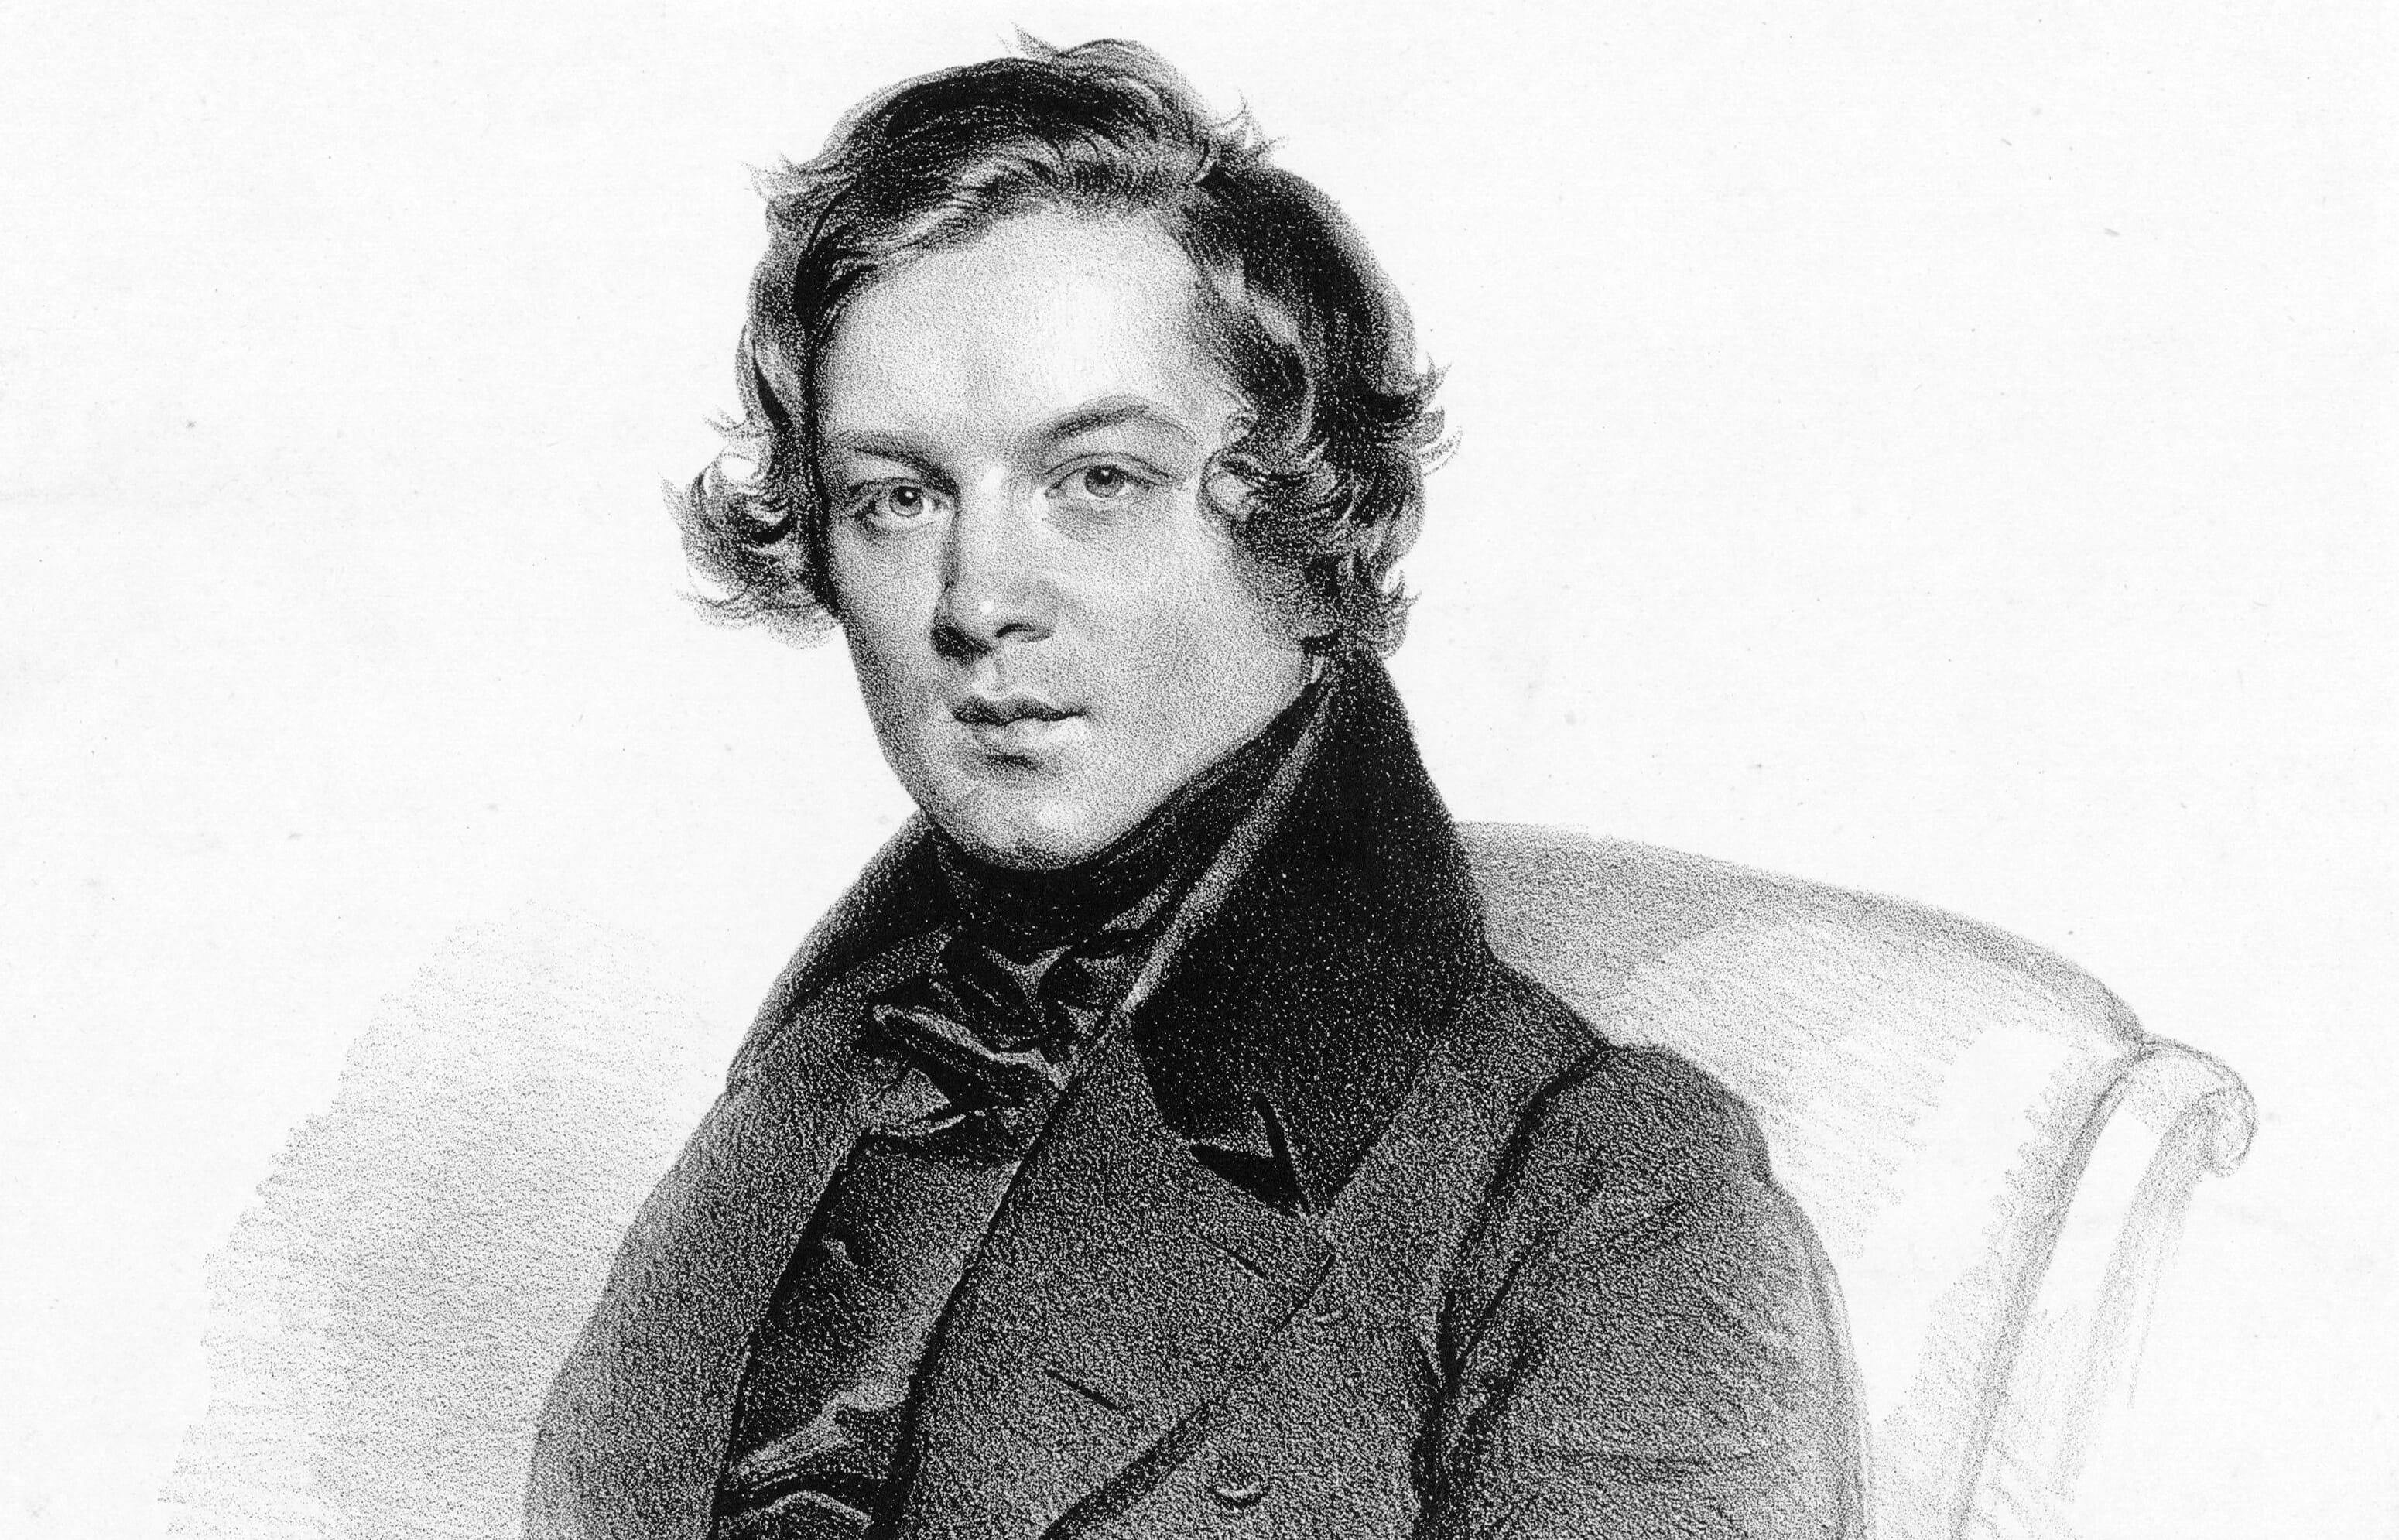 Robert Schumann, 1839 lithograph